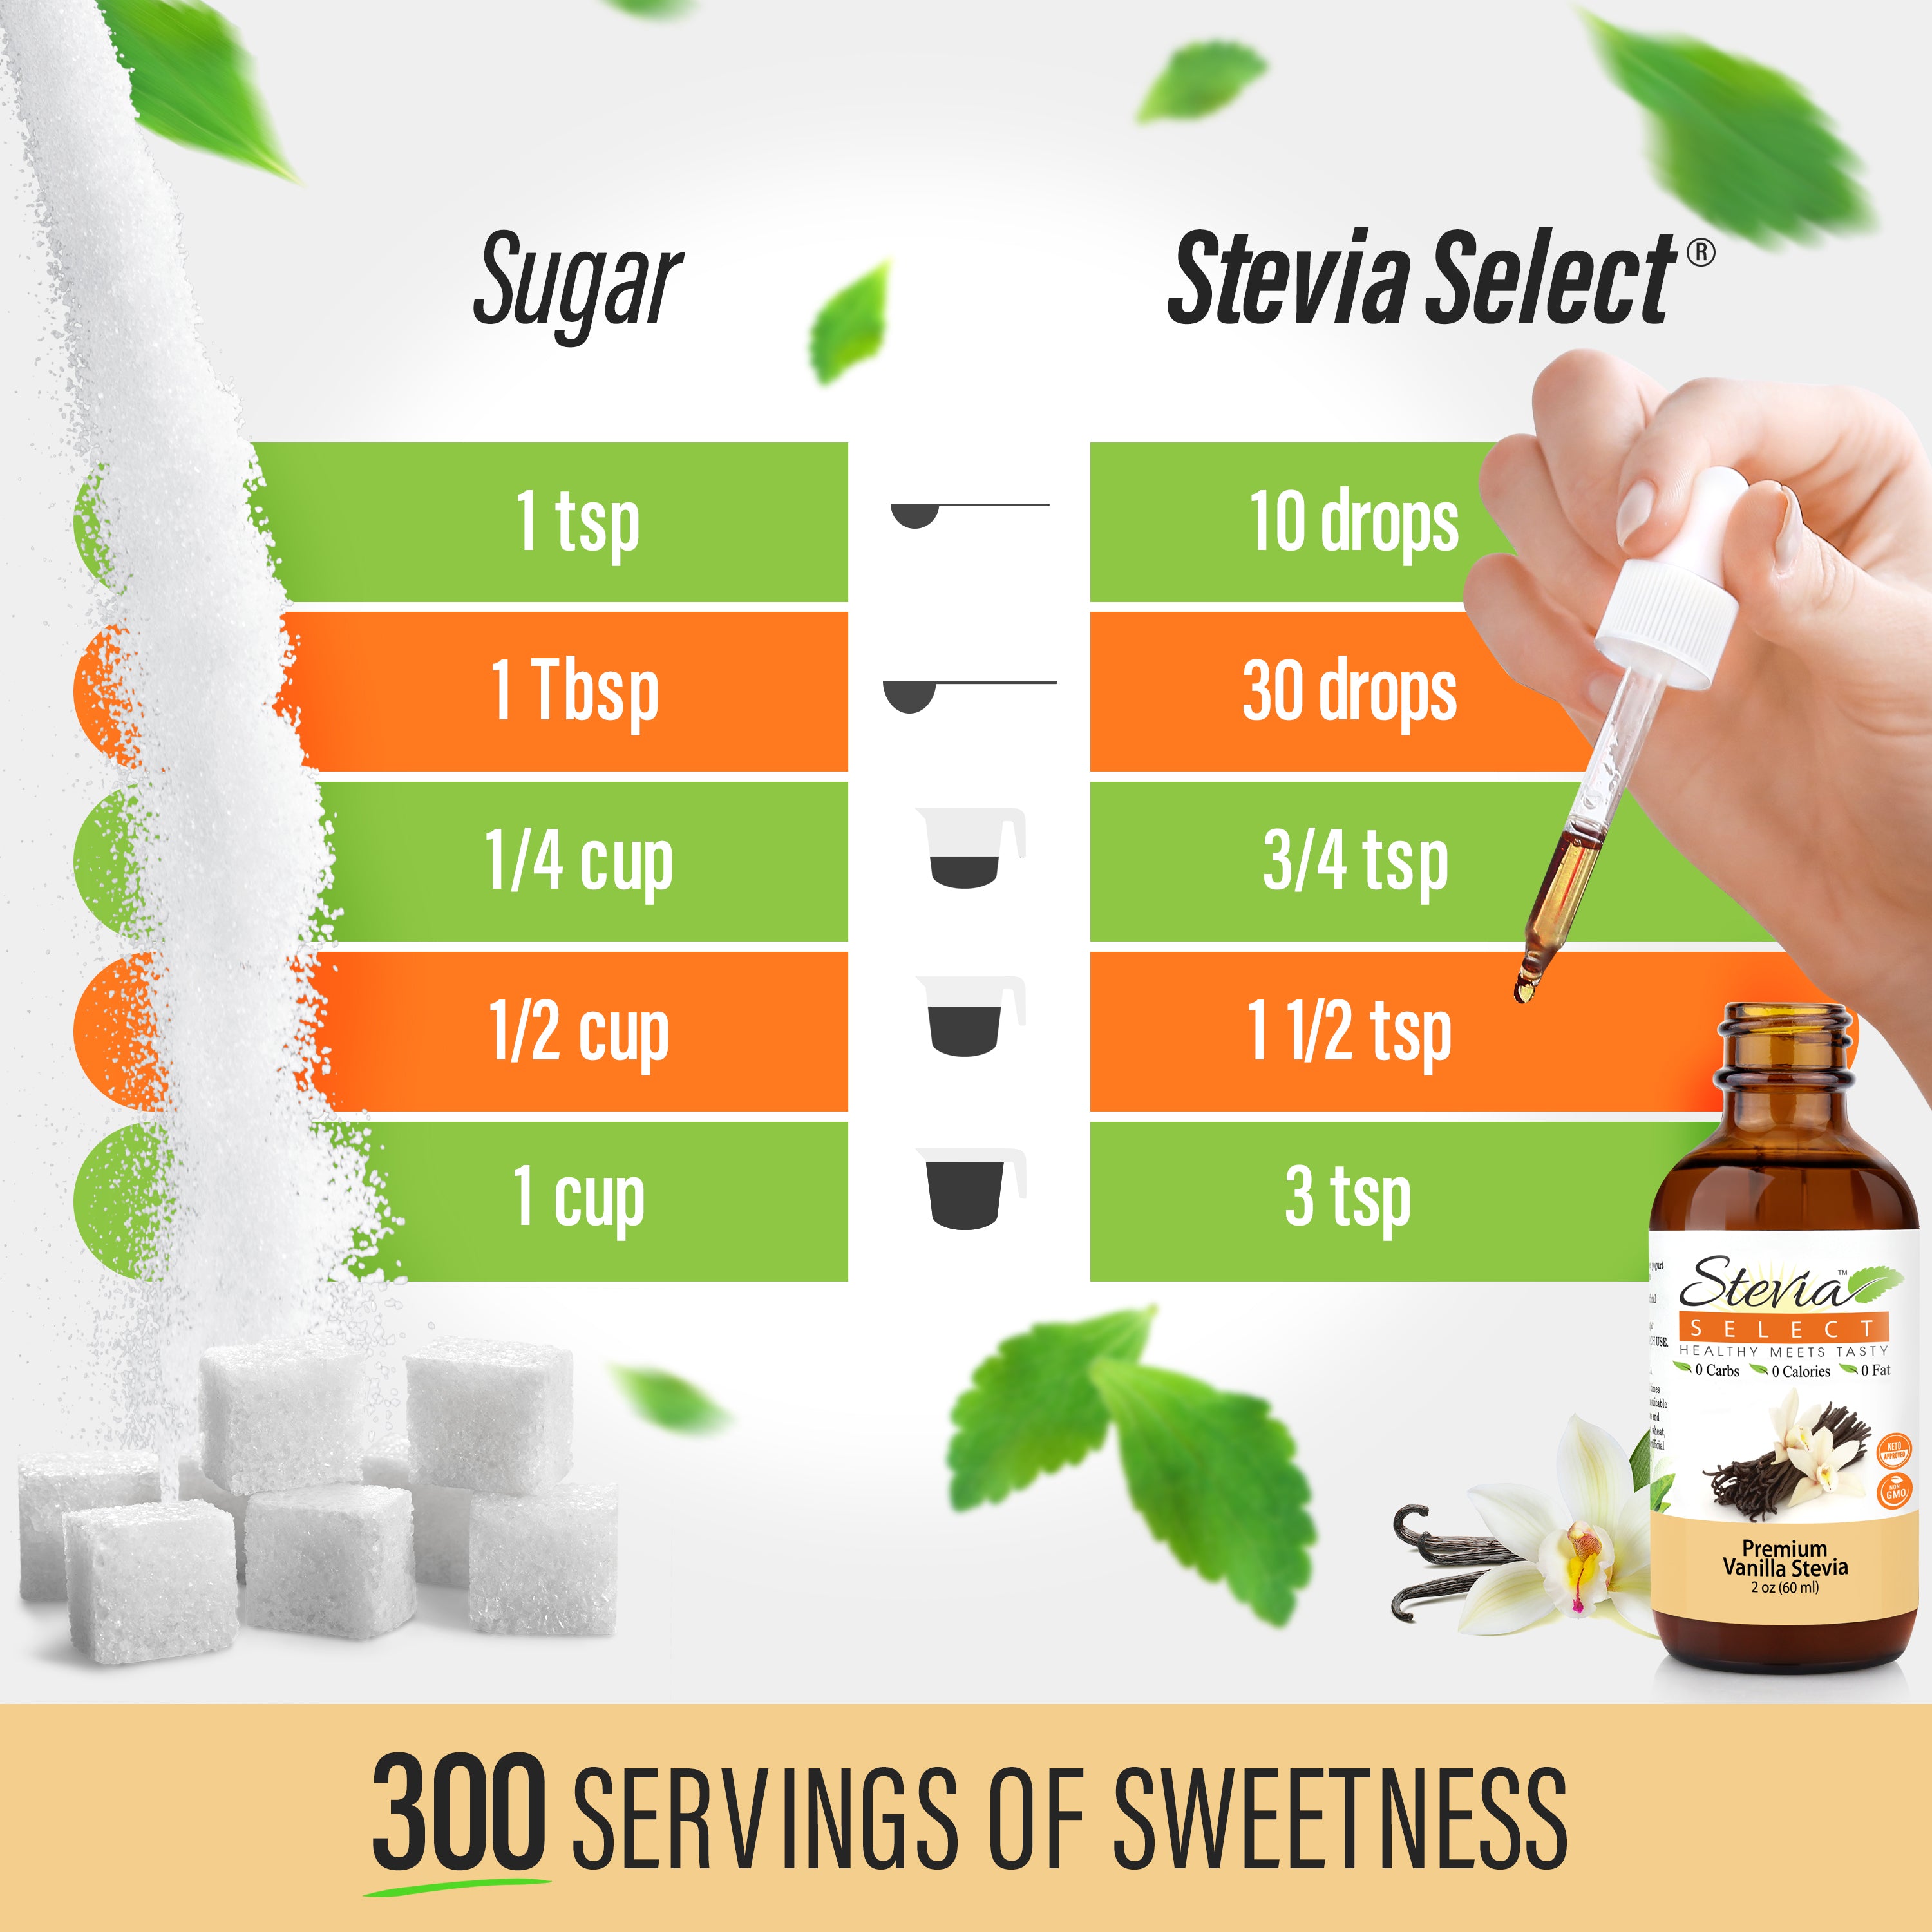 Stevia Liquid Vanilla Keto Flavor Drops 2 oz